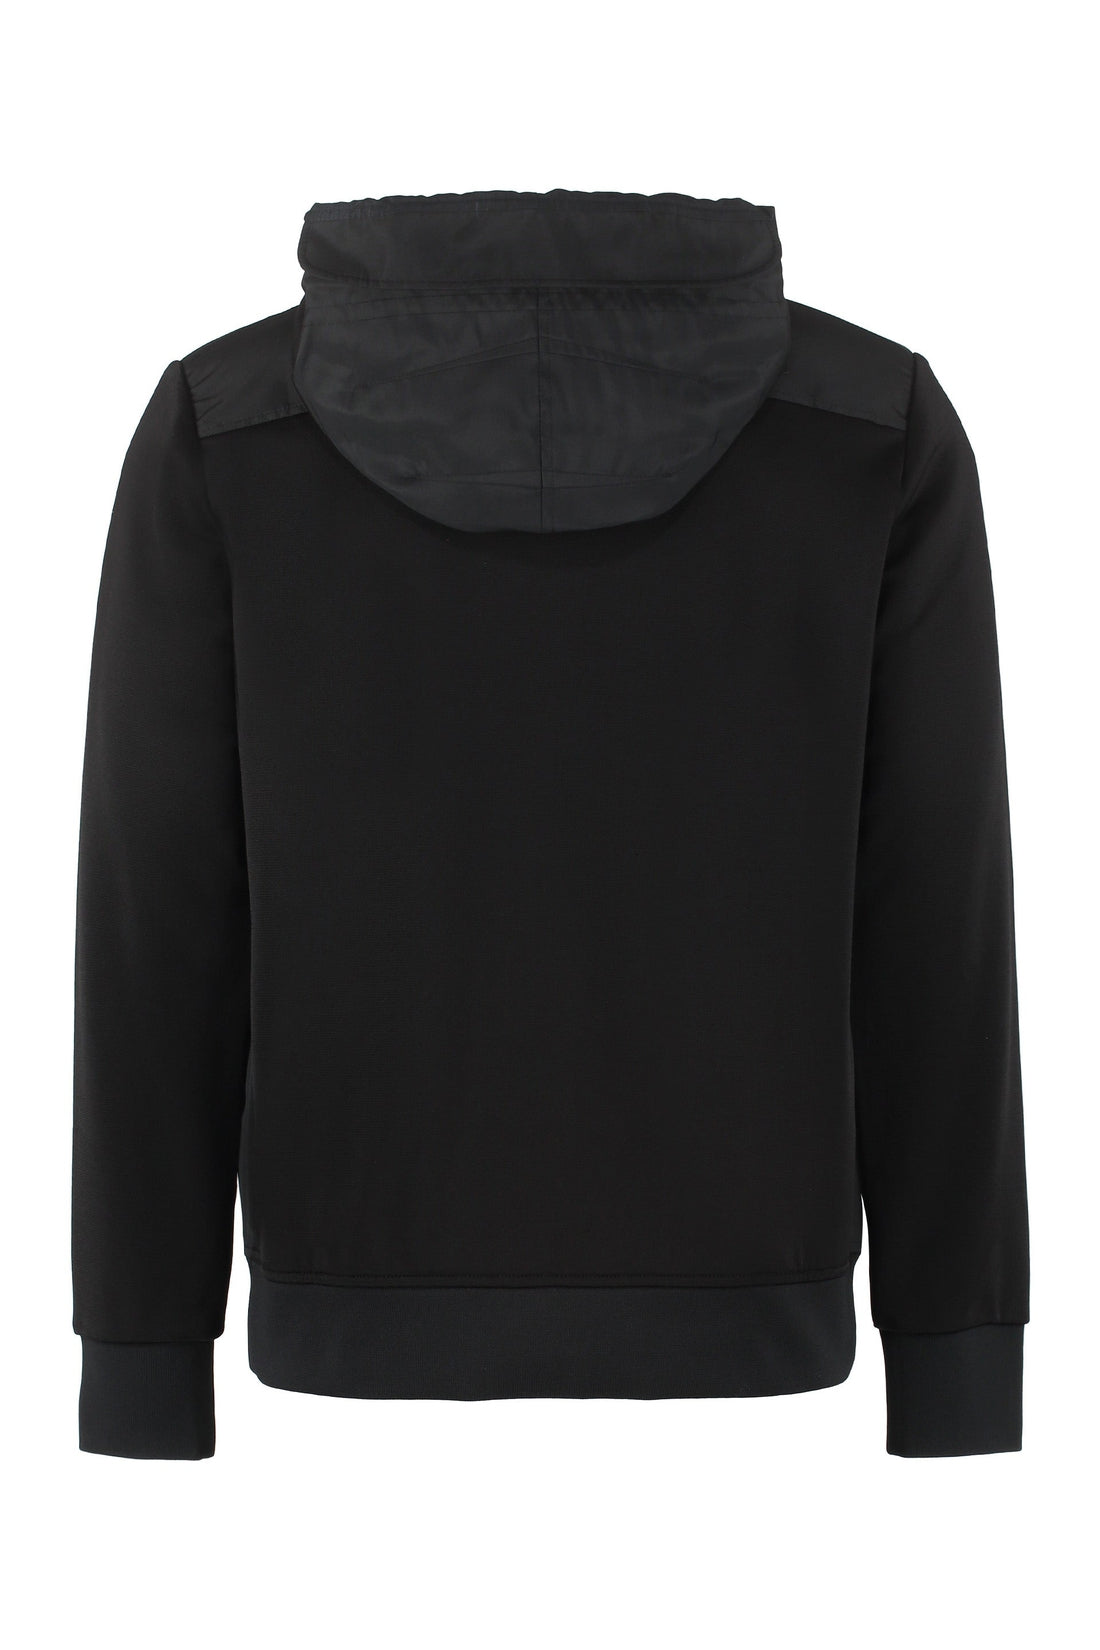 Alexander McQueen-OUTLET-SALE-Full zip hoodie-ARCHIVIST